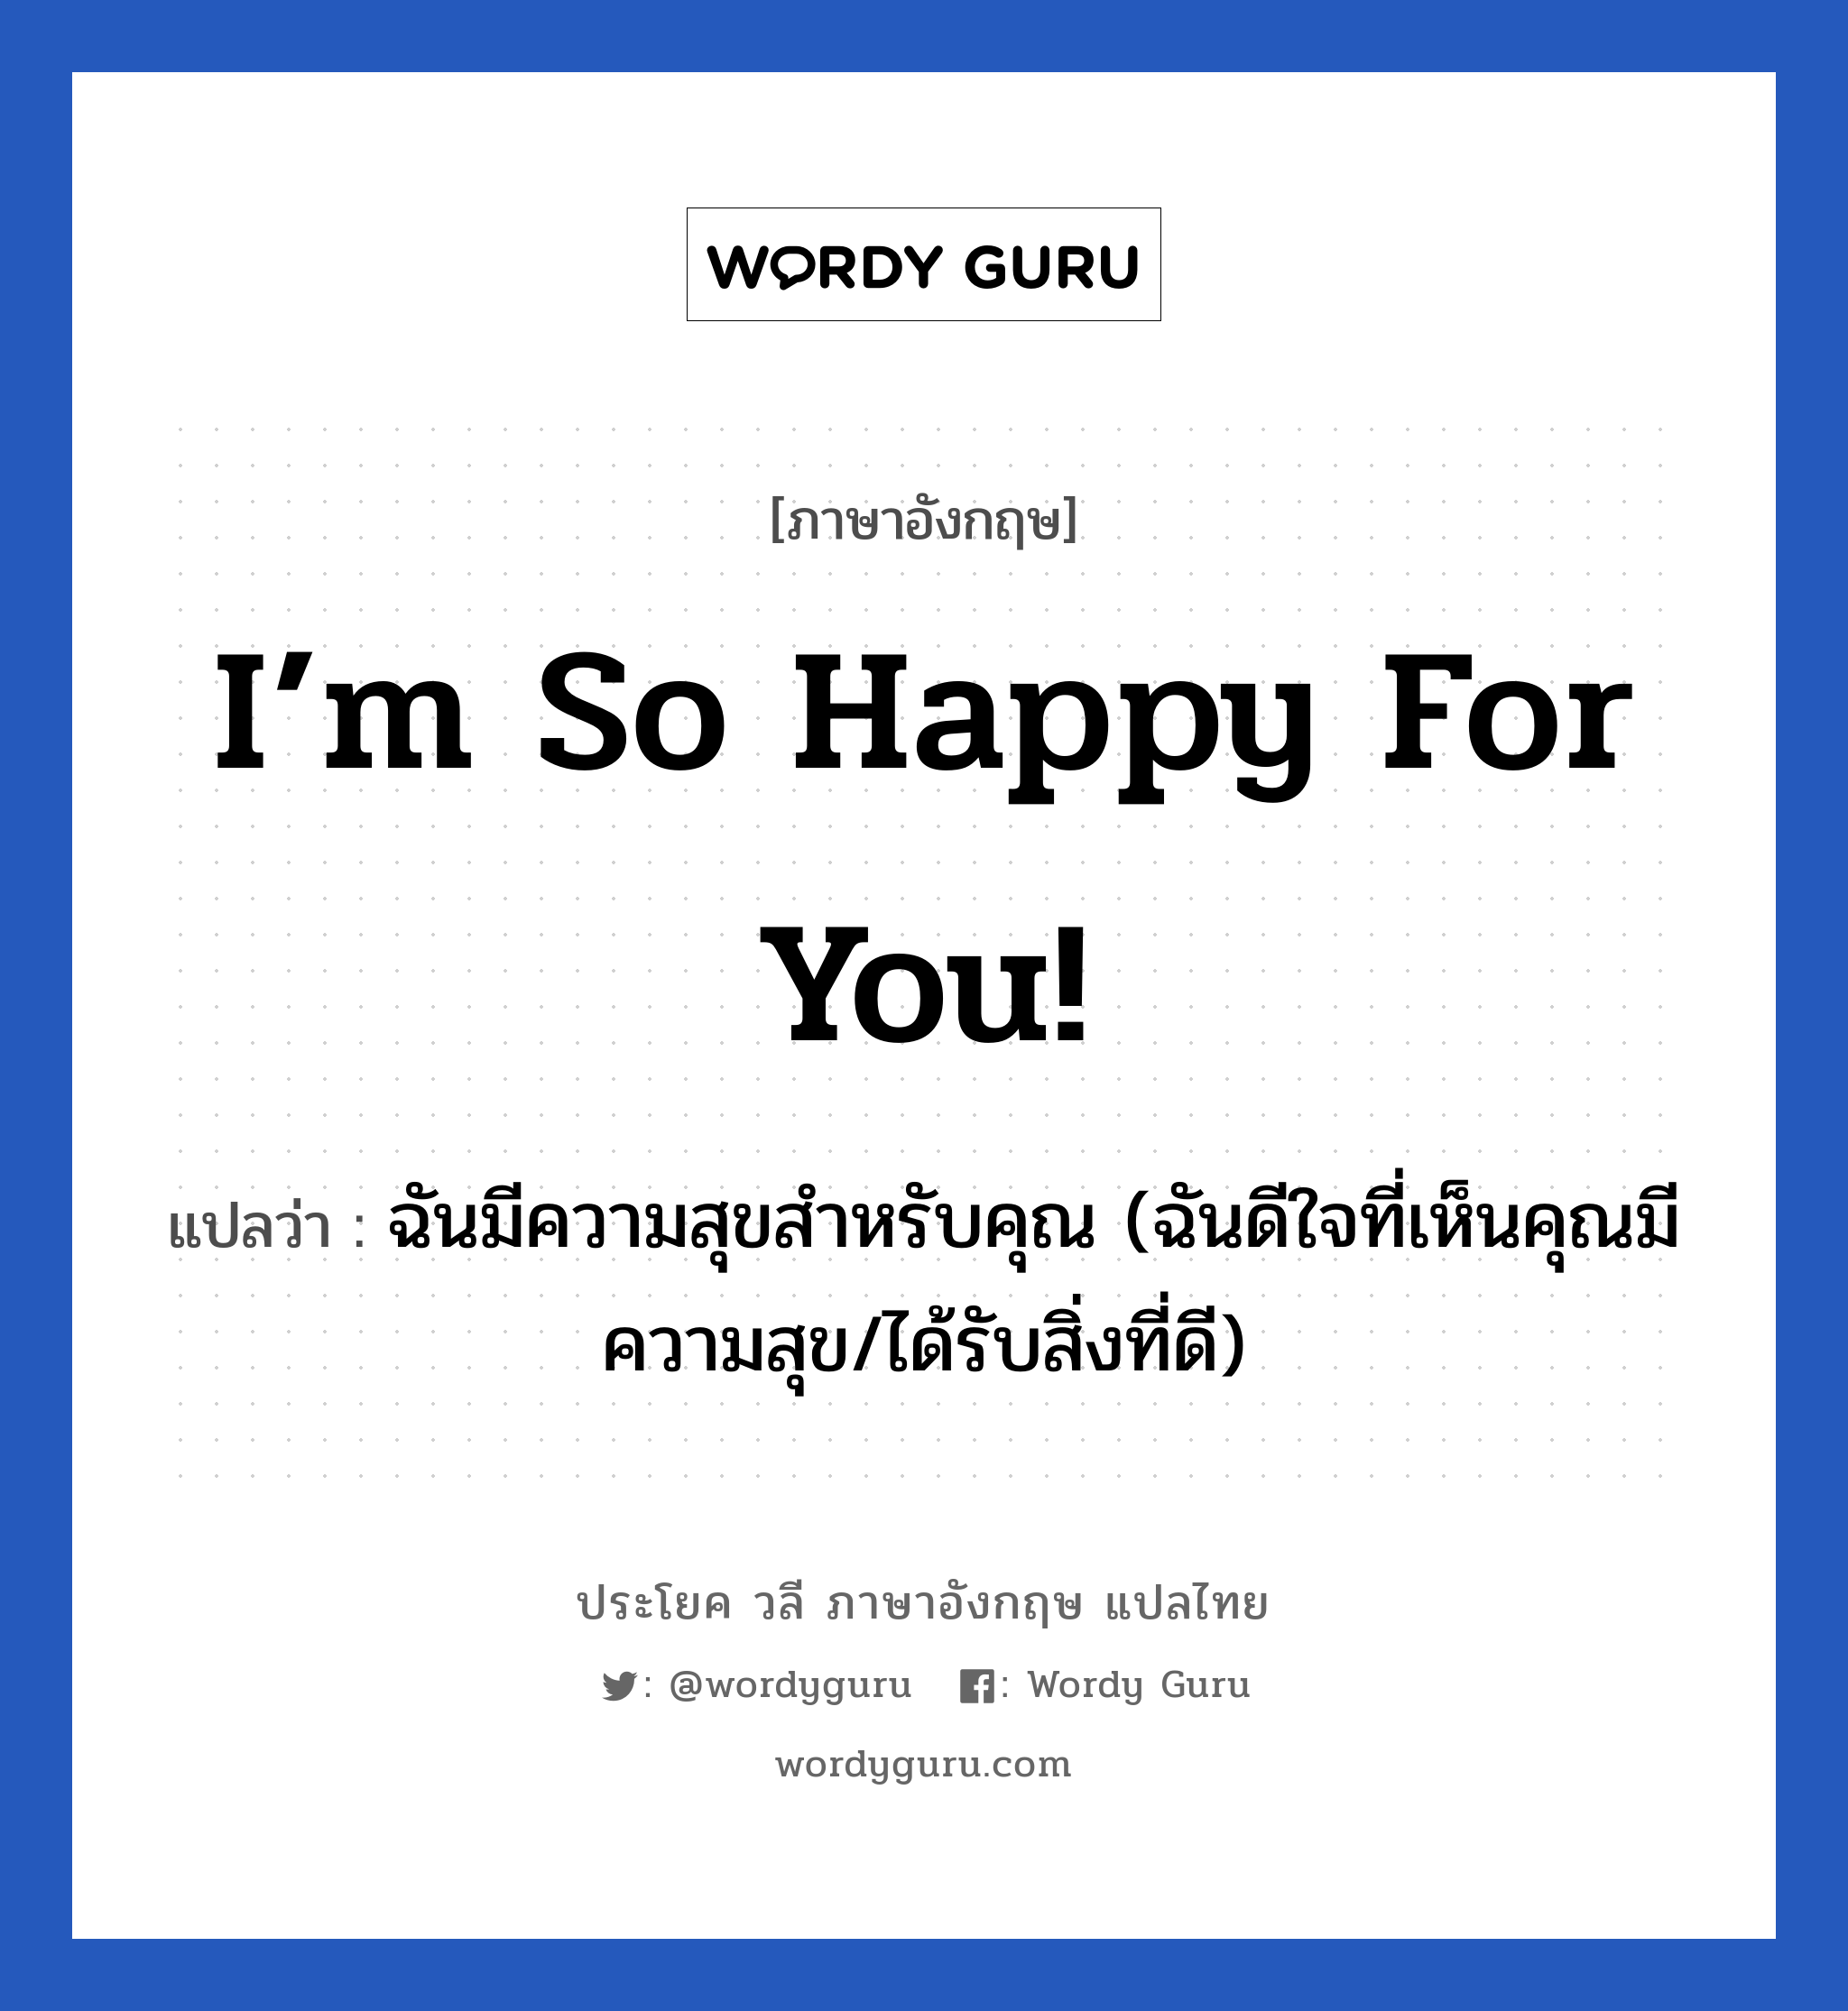 I’m so happy for you! แปลว่า?, วลีภาษาอังกฤษ I’m so happy for you! แปลว่า ฉันมีความสุขสำหรับคุณ (ฉันดีใจที่เห็นคุณมีความสุข/ได้รับสิ่งที่ดี)